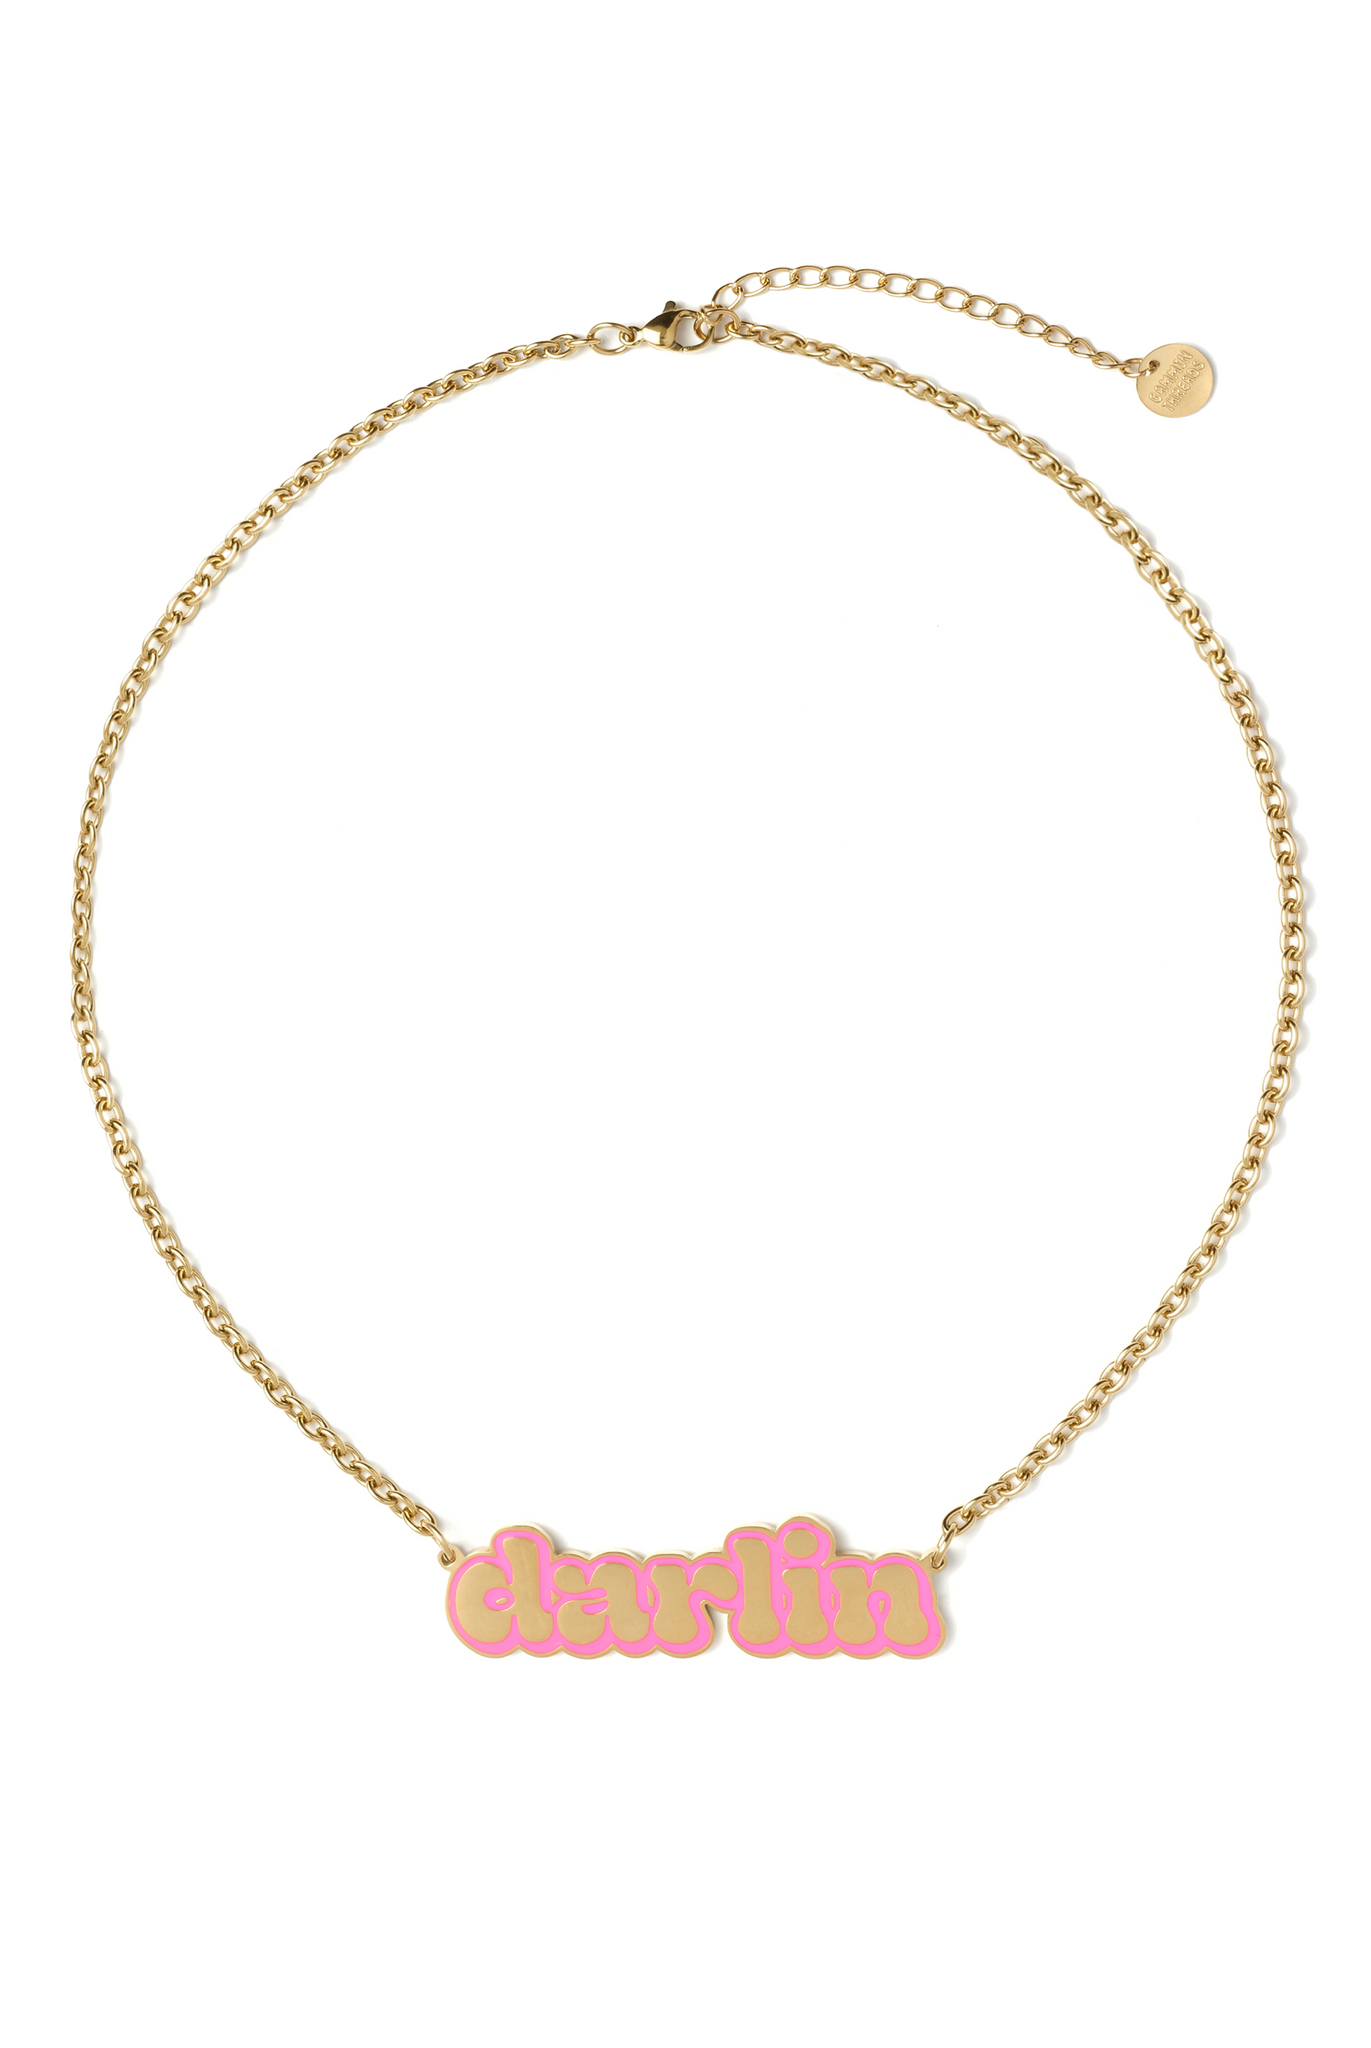 Darlin necklace